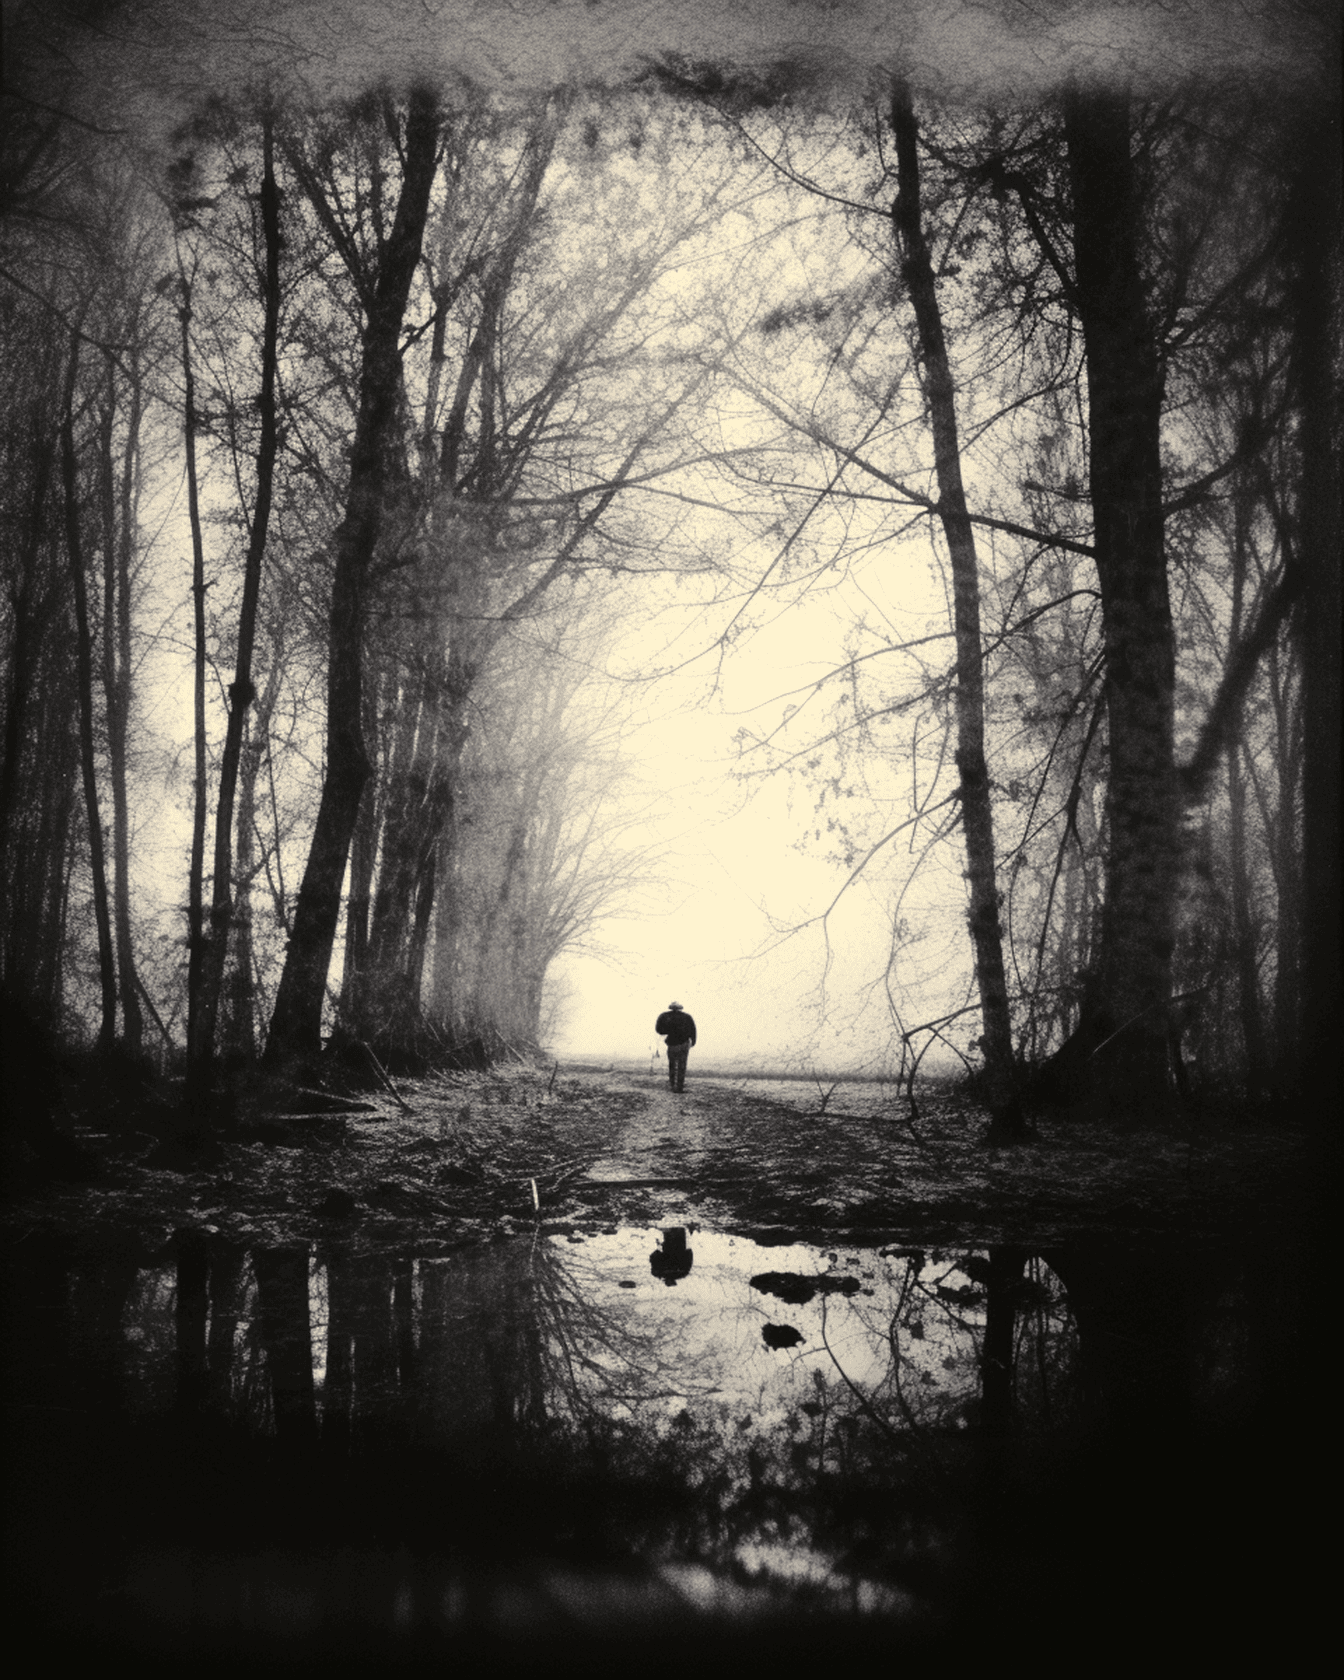 Karanlık ormanlık alanda orman yolunda yürüyen kişinin silueti